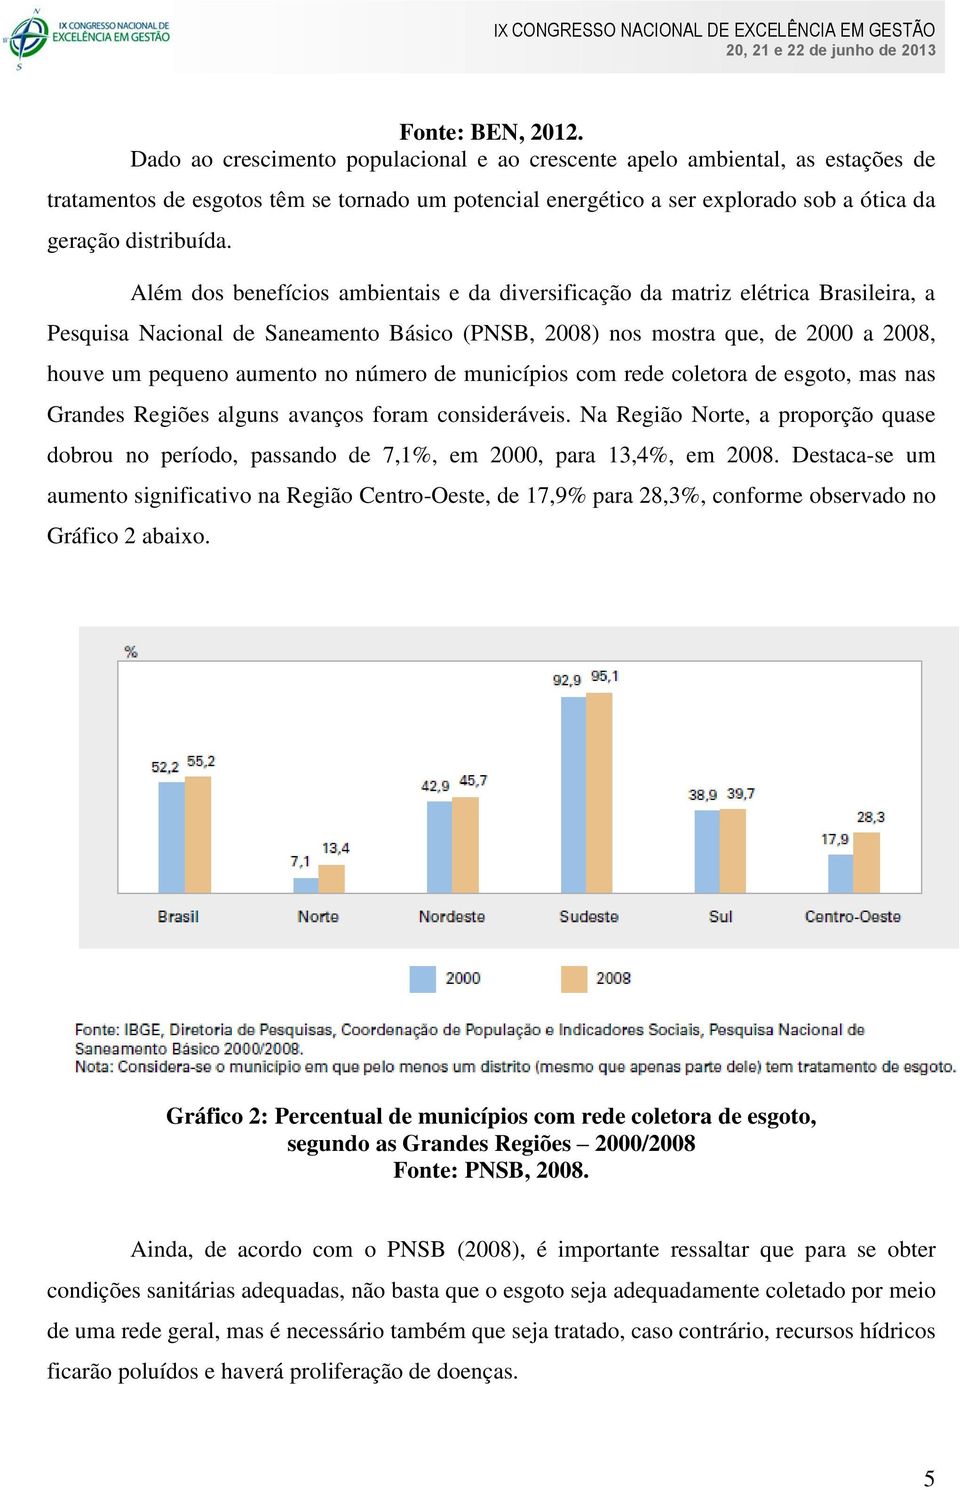 Além dos benefícios ambientais e da diversificação da matriz elétrica Brasileira, a Pesquisa Nacional de Saneamento Básico (PNSB, 2008) nos mostra que, de 2000 a 2008, houve um pequeno aumento no